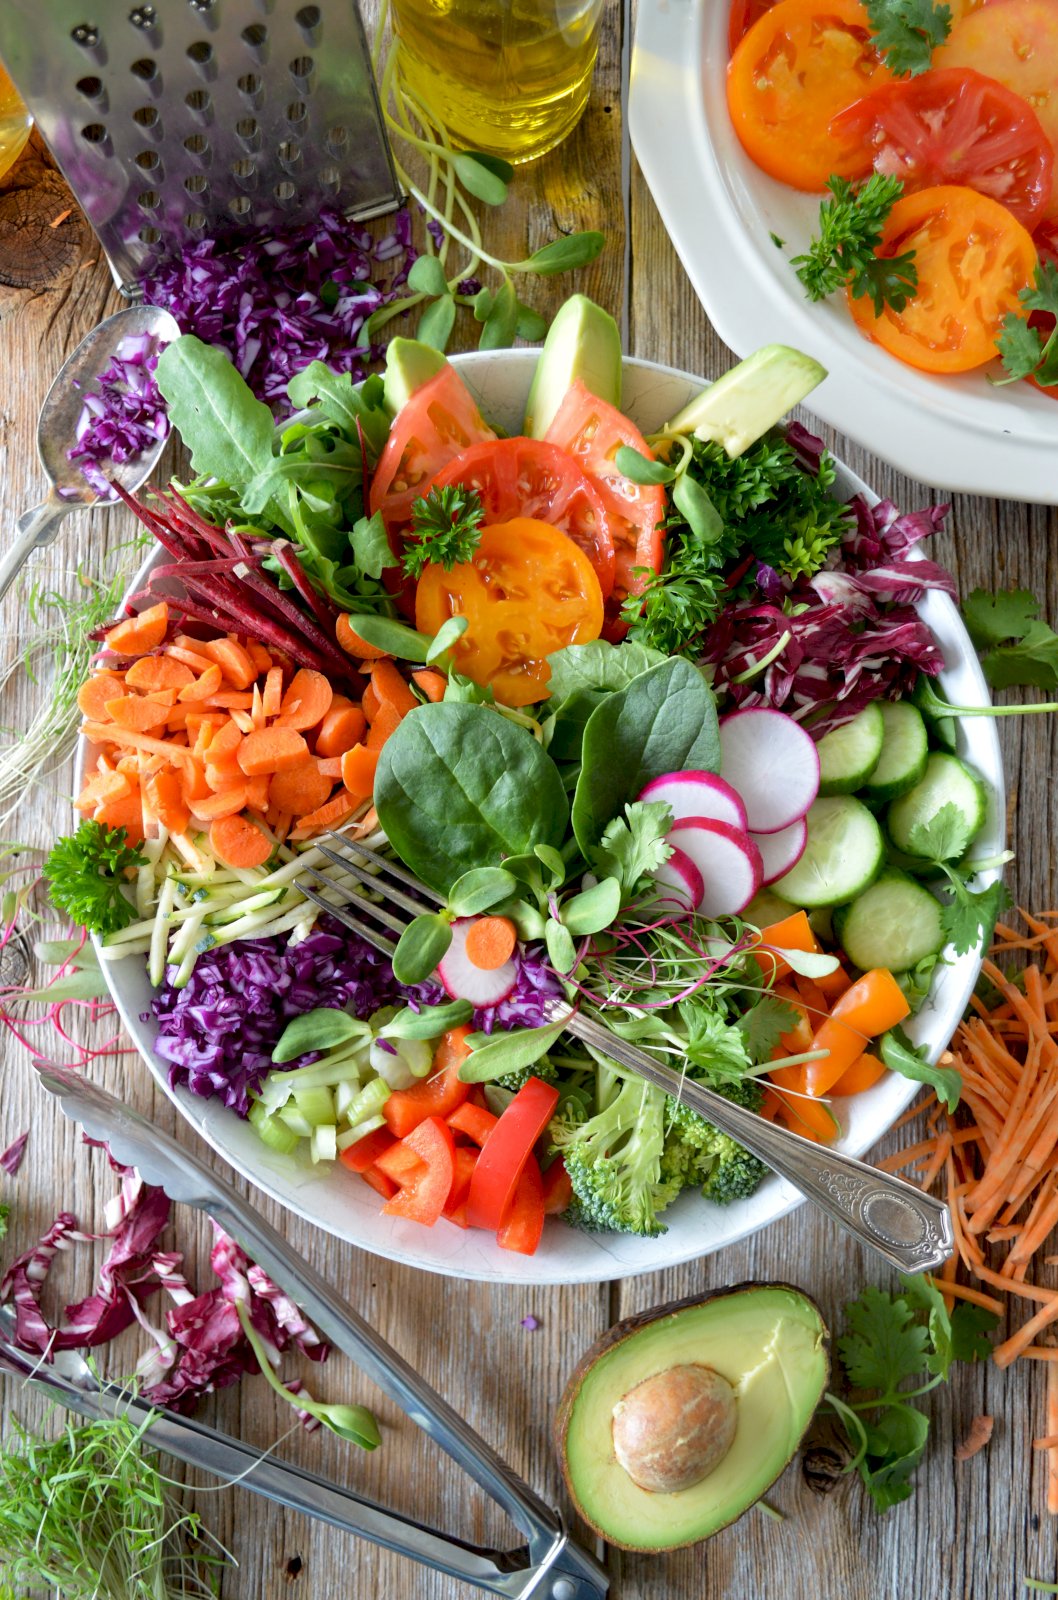 Zeleninový salát – Photo by Nadine Primeau on Unsplash